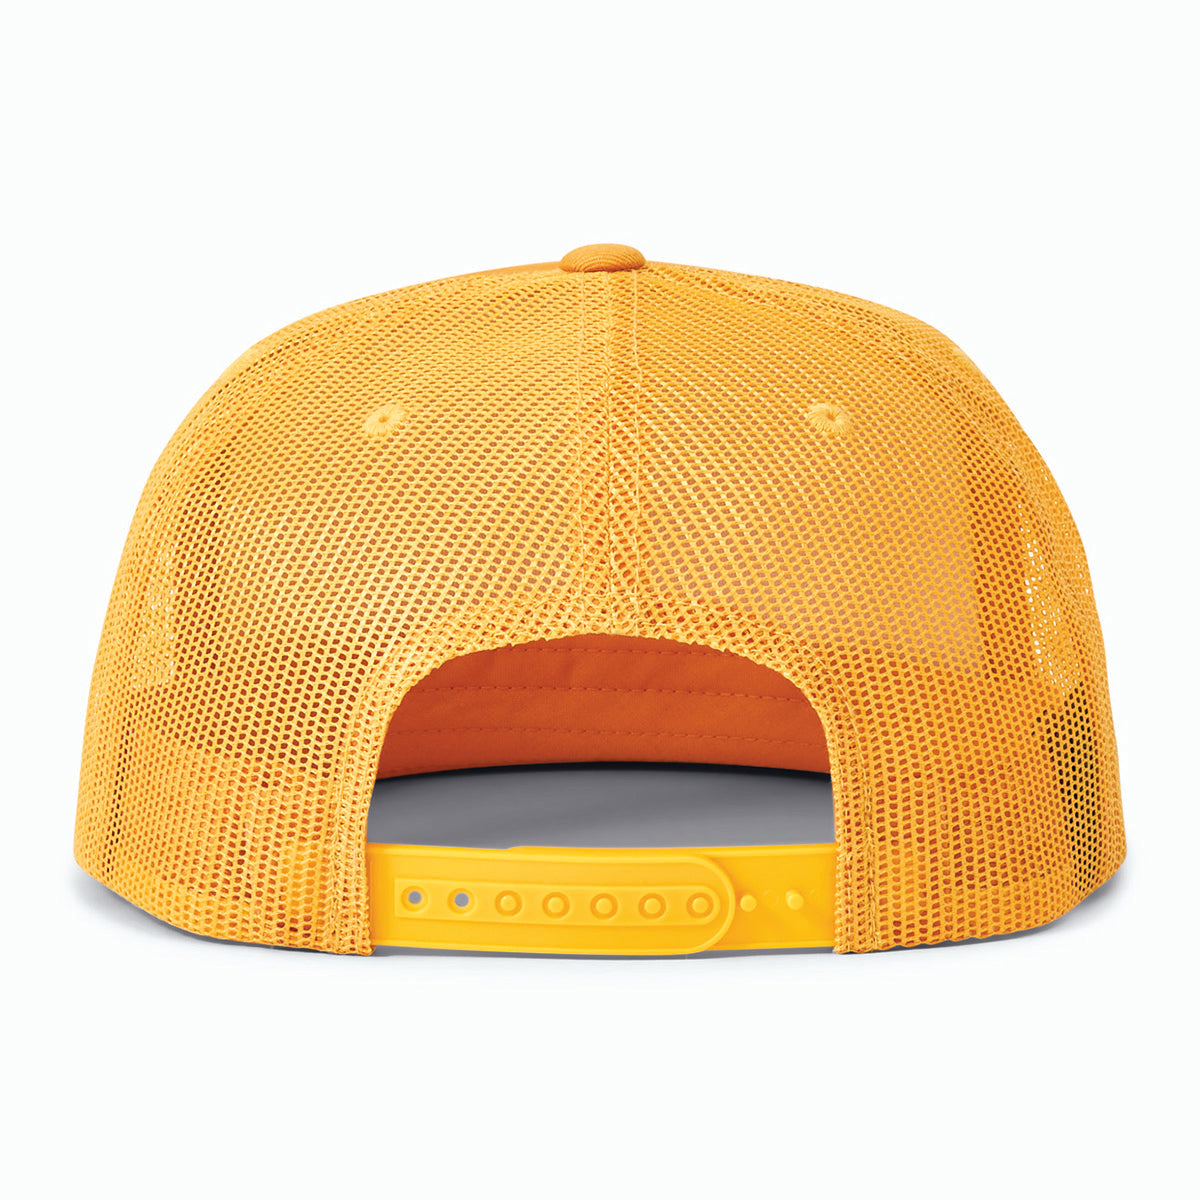 【BRIXTON - ブリクストン】FIXER MP MESH CAP / Yellow (フィクサーエムピーメッシュキャップ ミリタリー/イエロー)